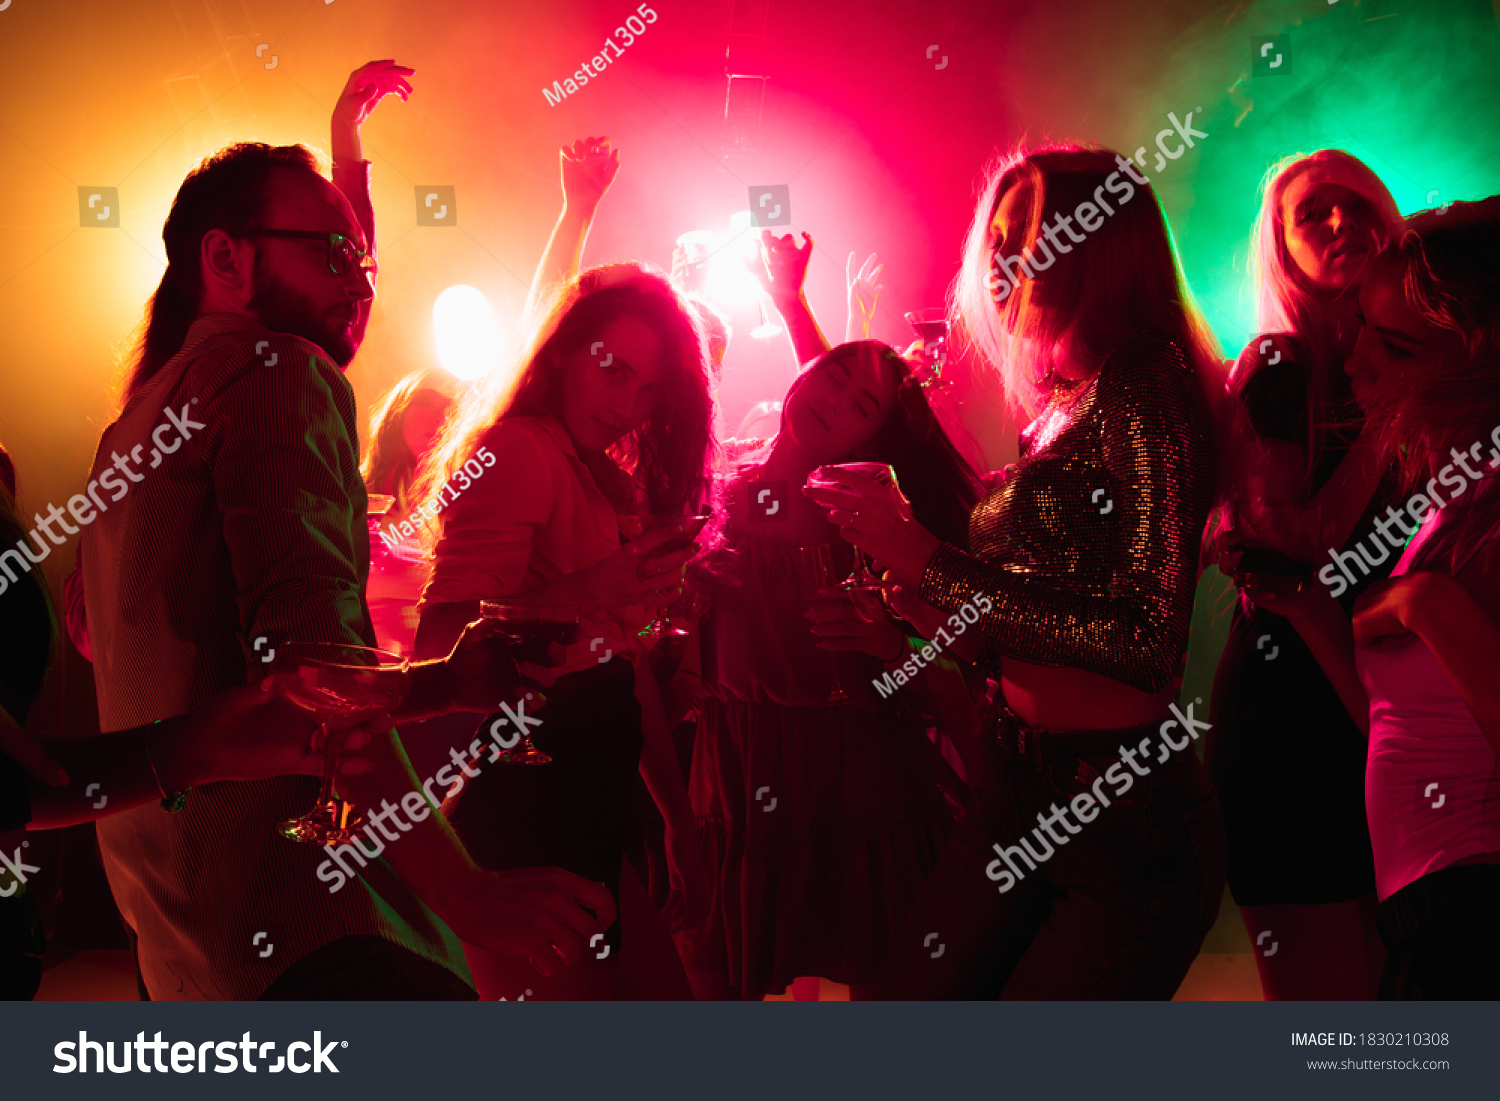 1,766 Crowded dancefloor Images, Stock Photos & Vectors | Shutterstock